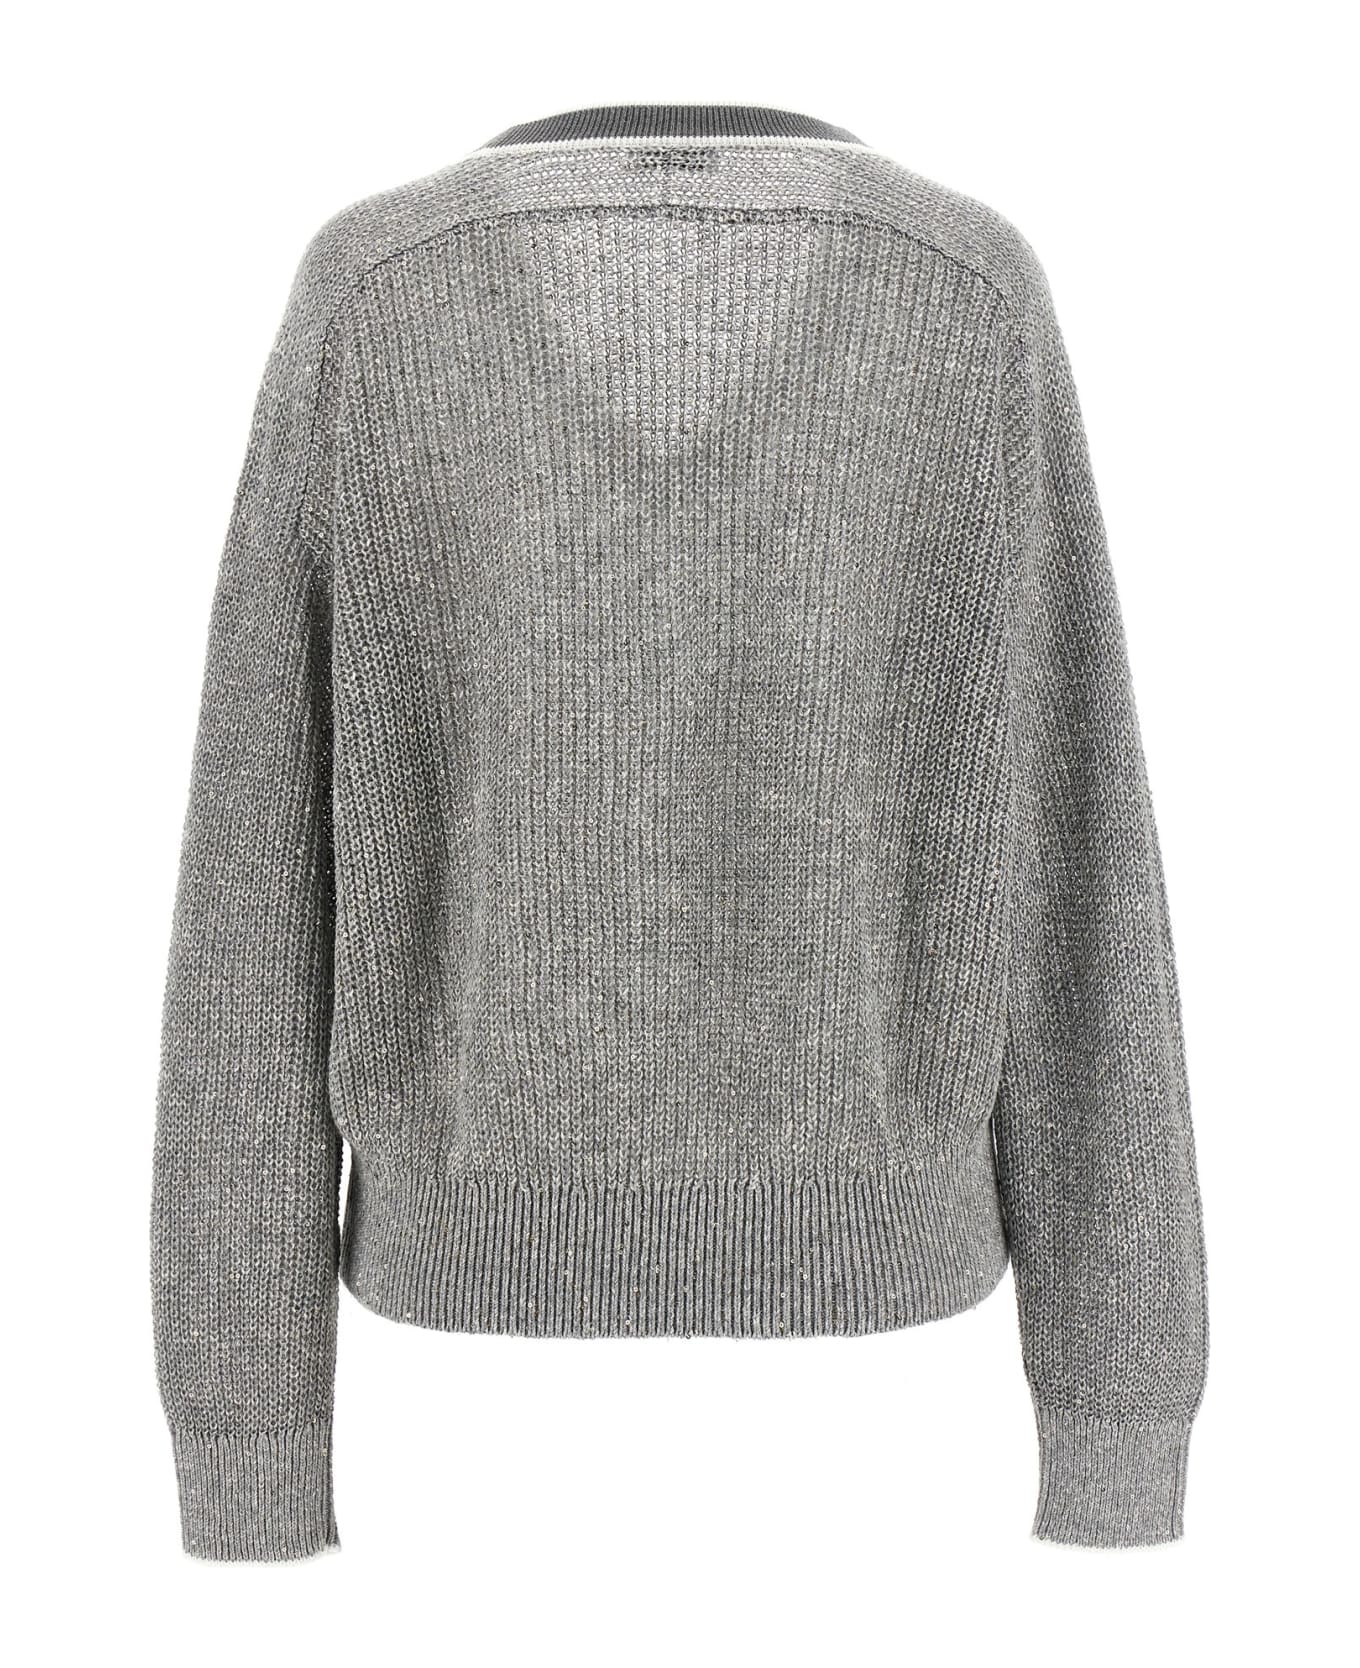 Brunello Cucinelli V-neck Sweater - Gray